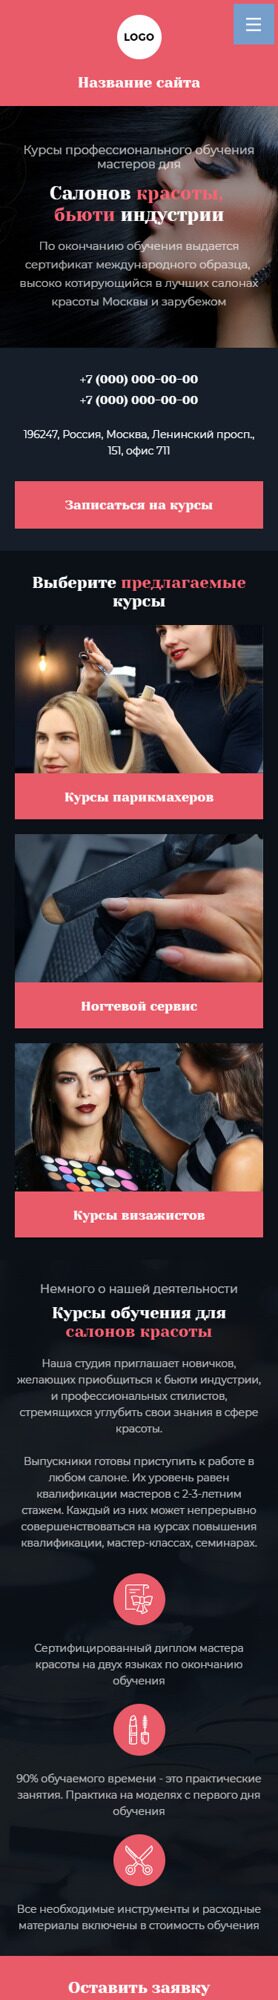 Готовый Сайт-Бизнес № 4001453 - Обучение мастеров для салонов красоты (Мобильная версия)